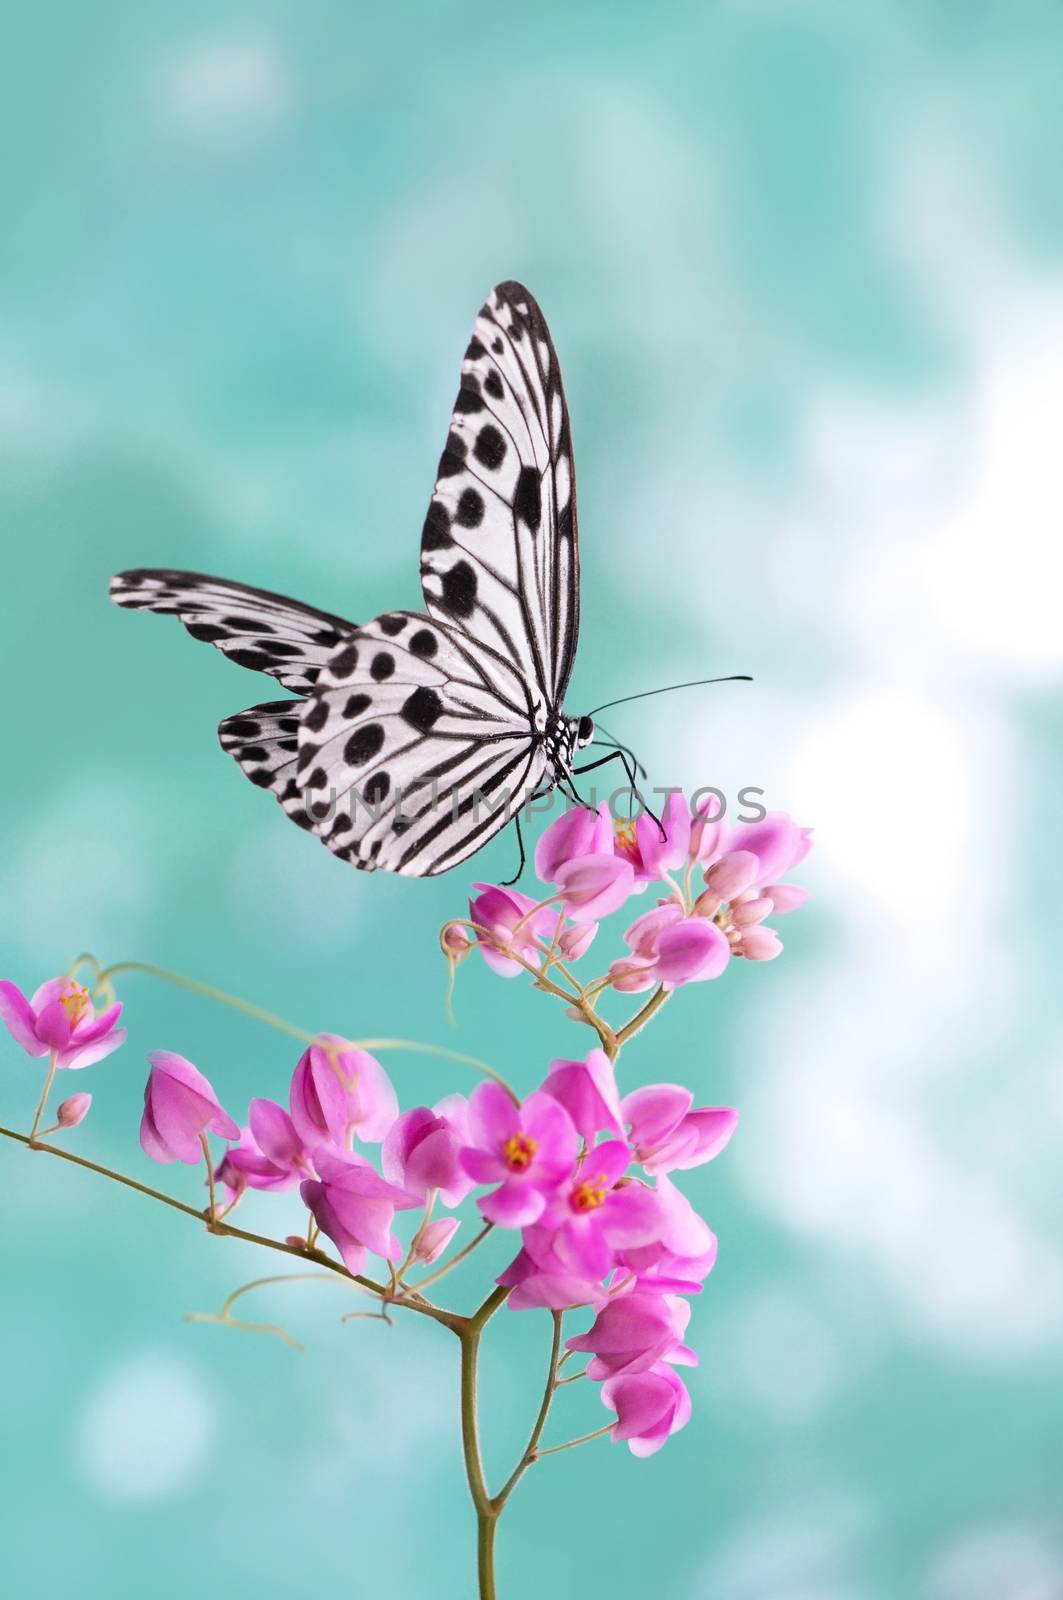 Paper Kite Butterfly by szefei